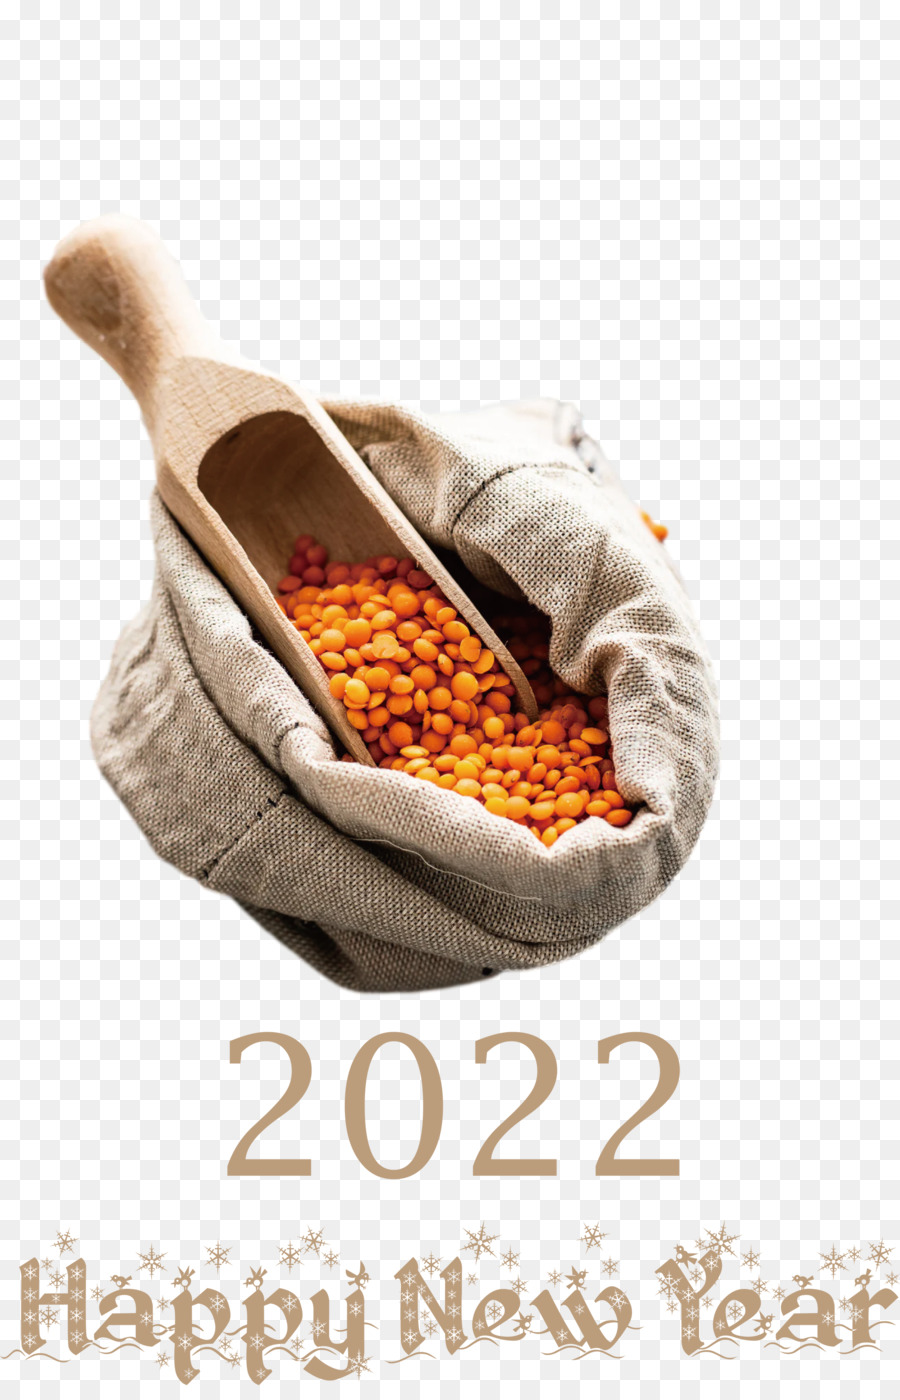 2022 Chúc mừng năm mới 2022 năm mới 2022 - 